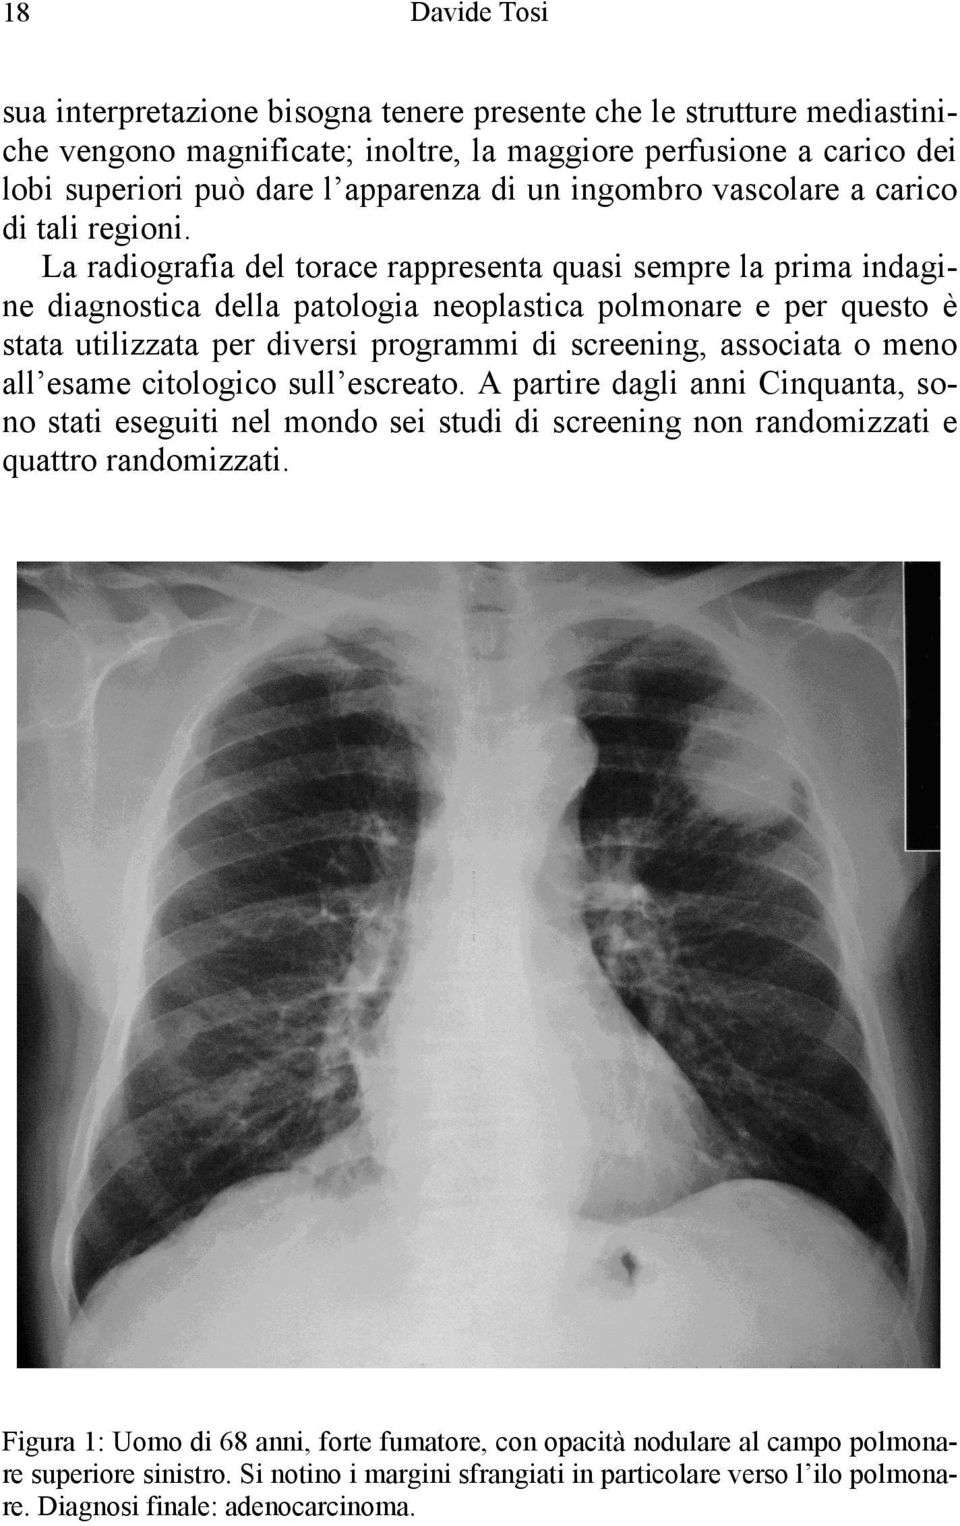 La radiografia del torace rappresenta quasi sempre la prima indagine diagnostica della patologia neoplastica polmonare e per questo è stata utilizzata per diversi programmi di screening, associata o